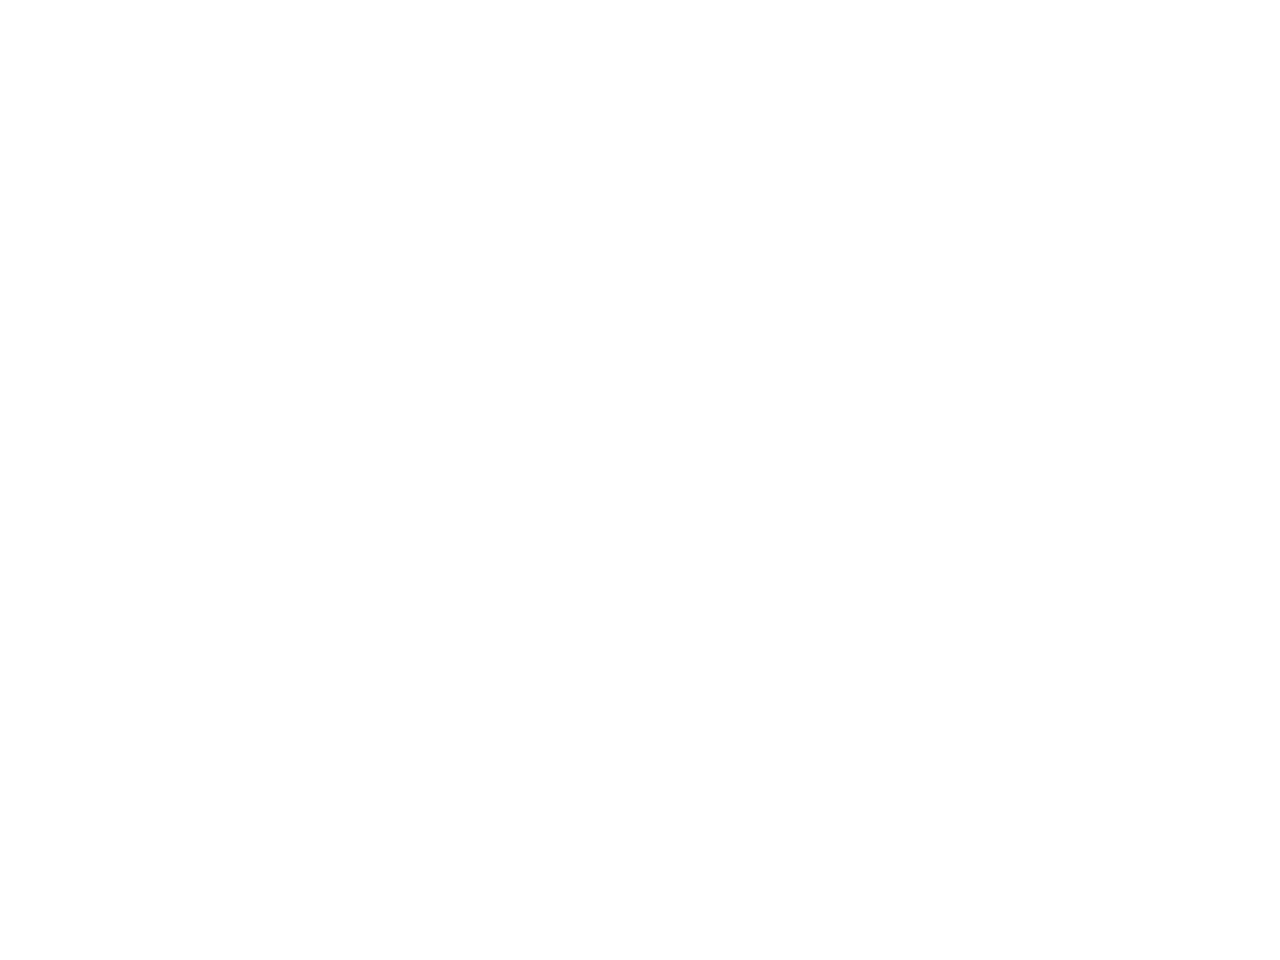 Усадьба Гребницких 1840 год. Памятник архитектуры 19 века. Находится под охраной государства. д.Ореховно, Ушачский район, Витебская область